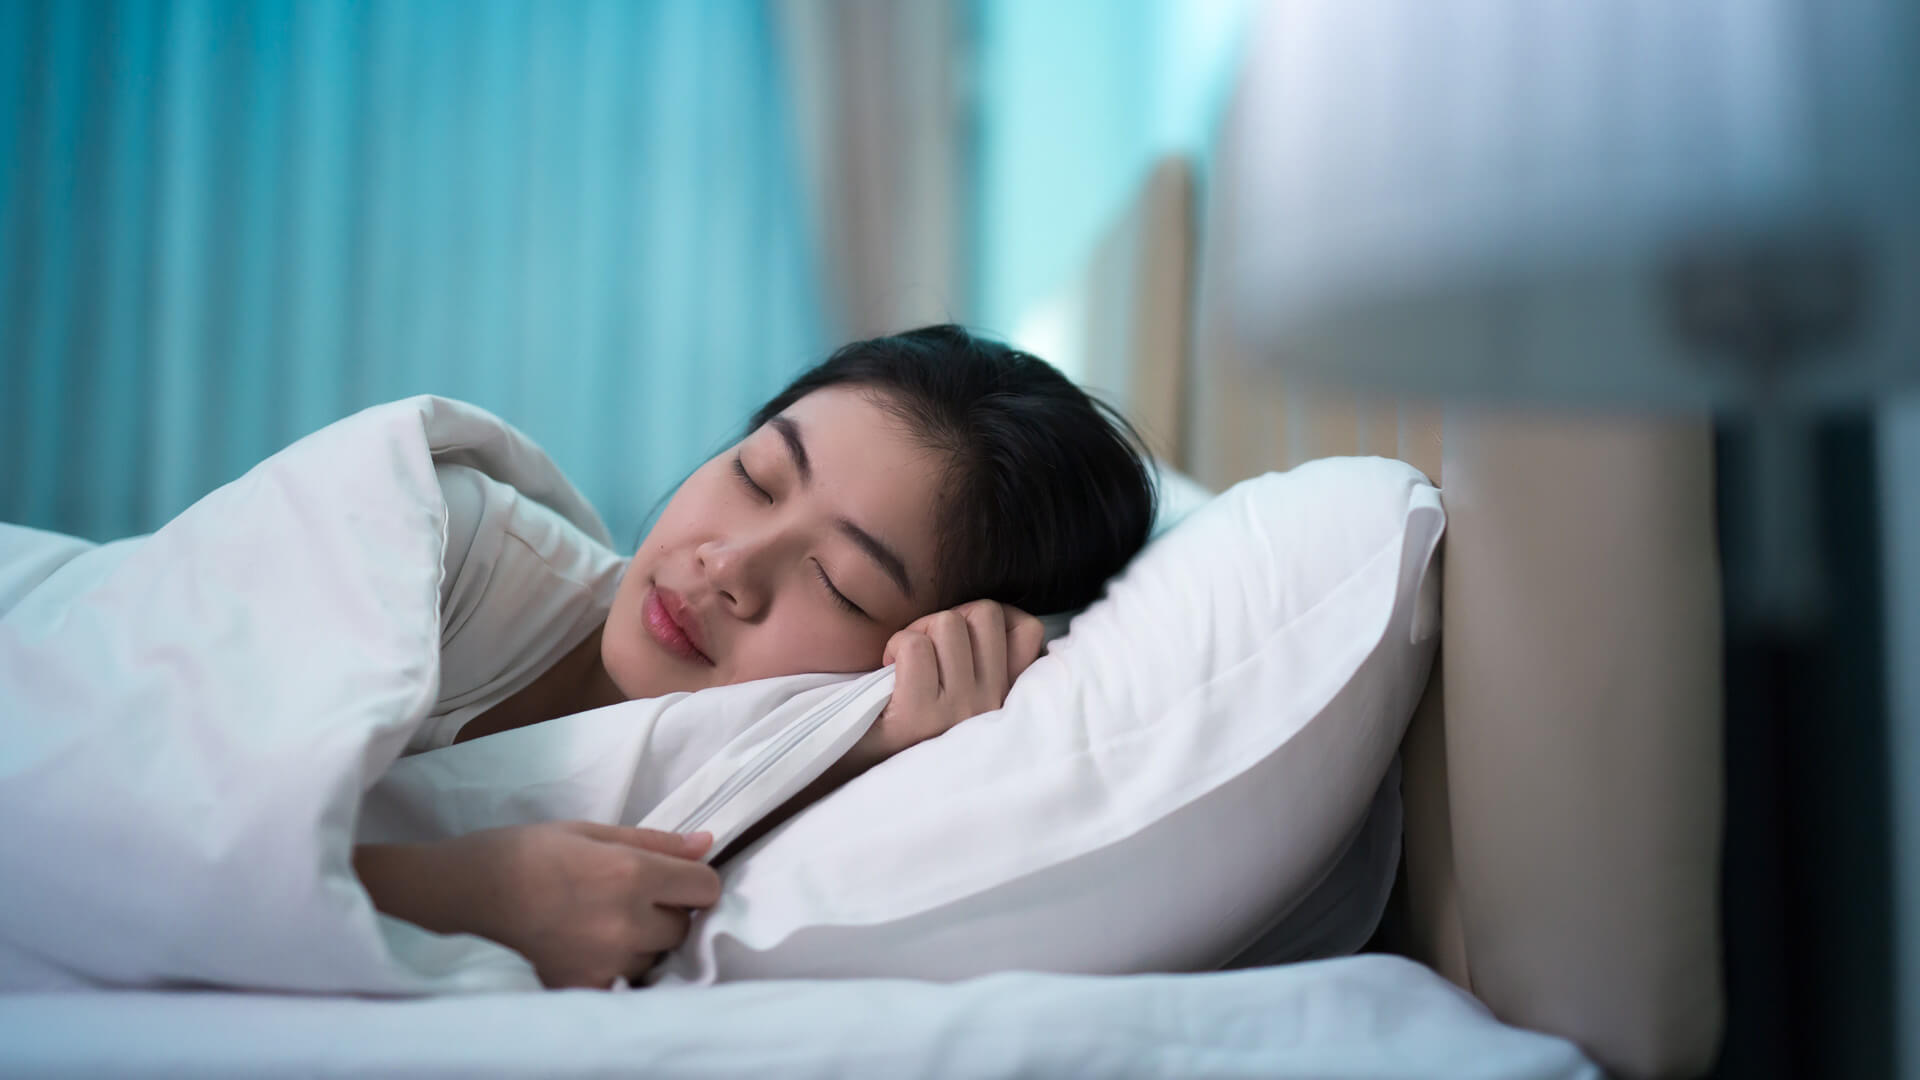 5 Điểm bấm huyệt giúp giấc ngủ ngon hơn 